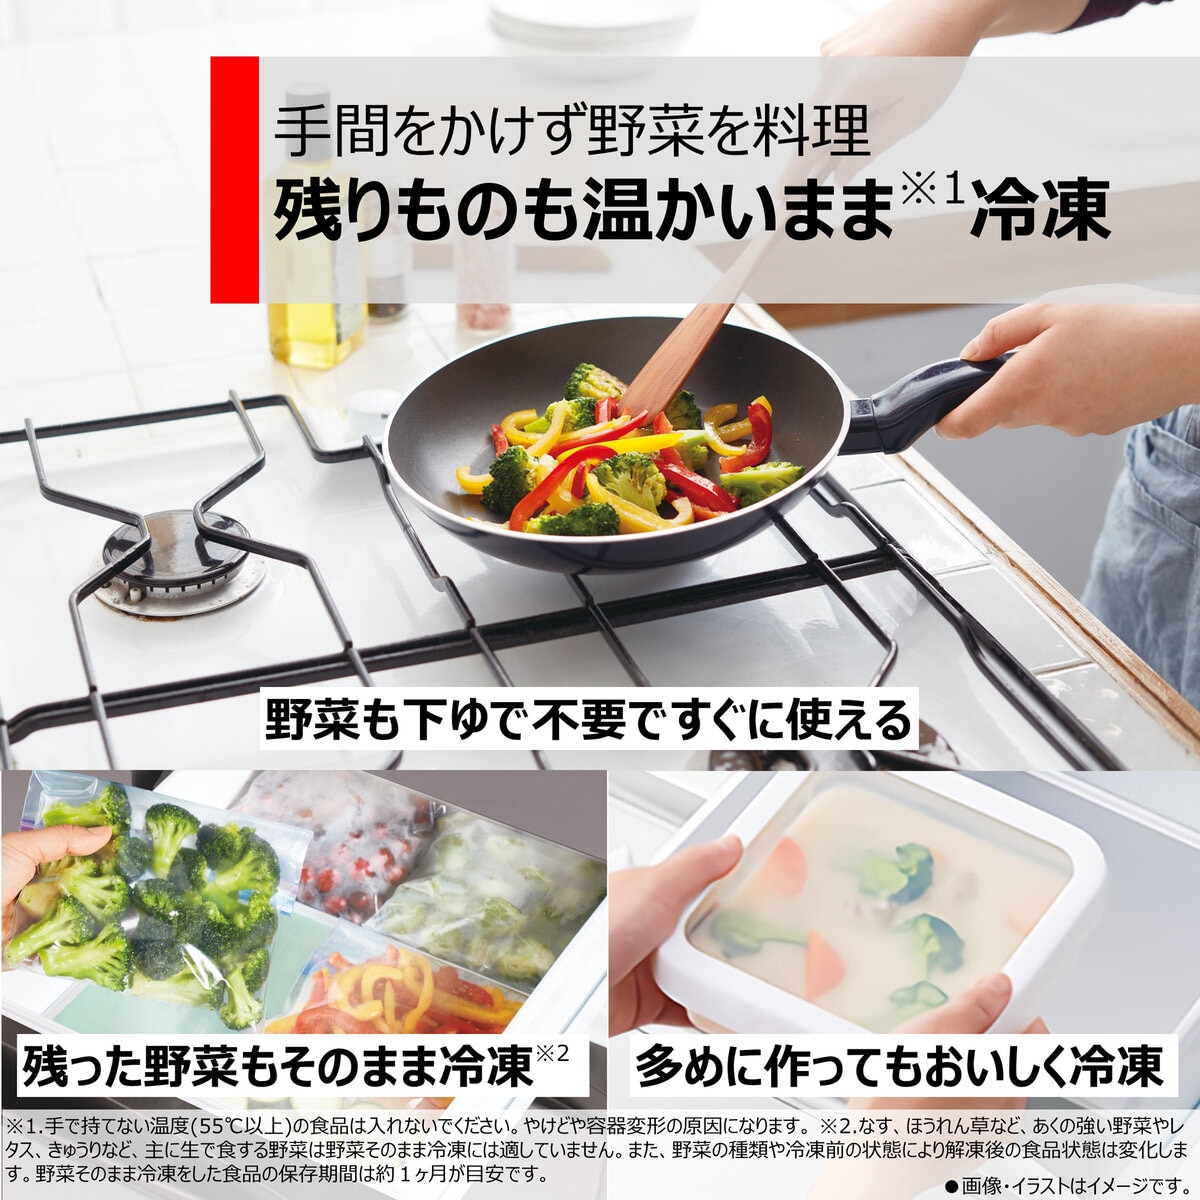 【好評お得】TOSHIBA/東芝 601L 6ドア冷蔵冷凍庫 フレンチドア GR-J610FV 直接引取り歓迎(横浜市) digjunkmarket 500リットル以上